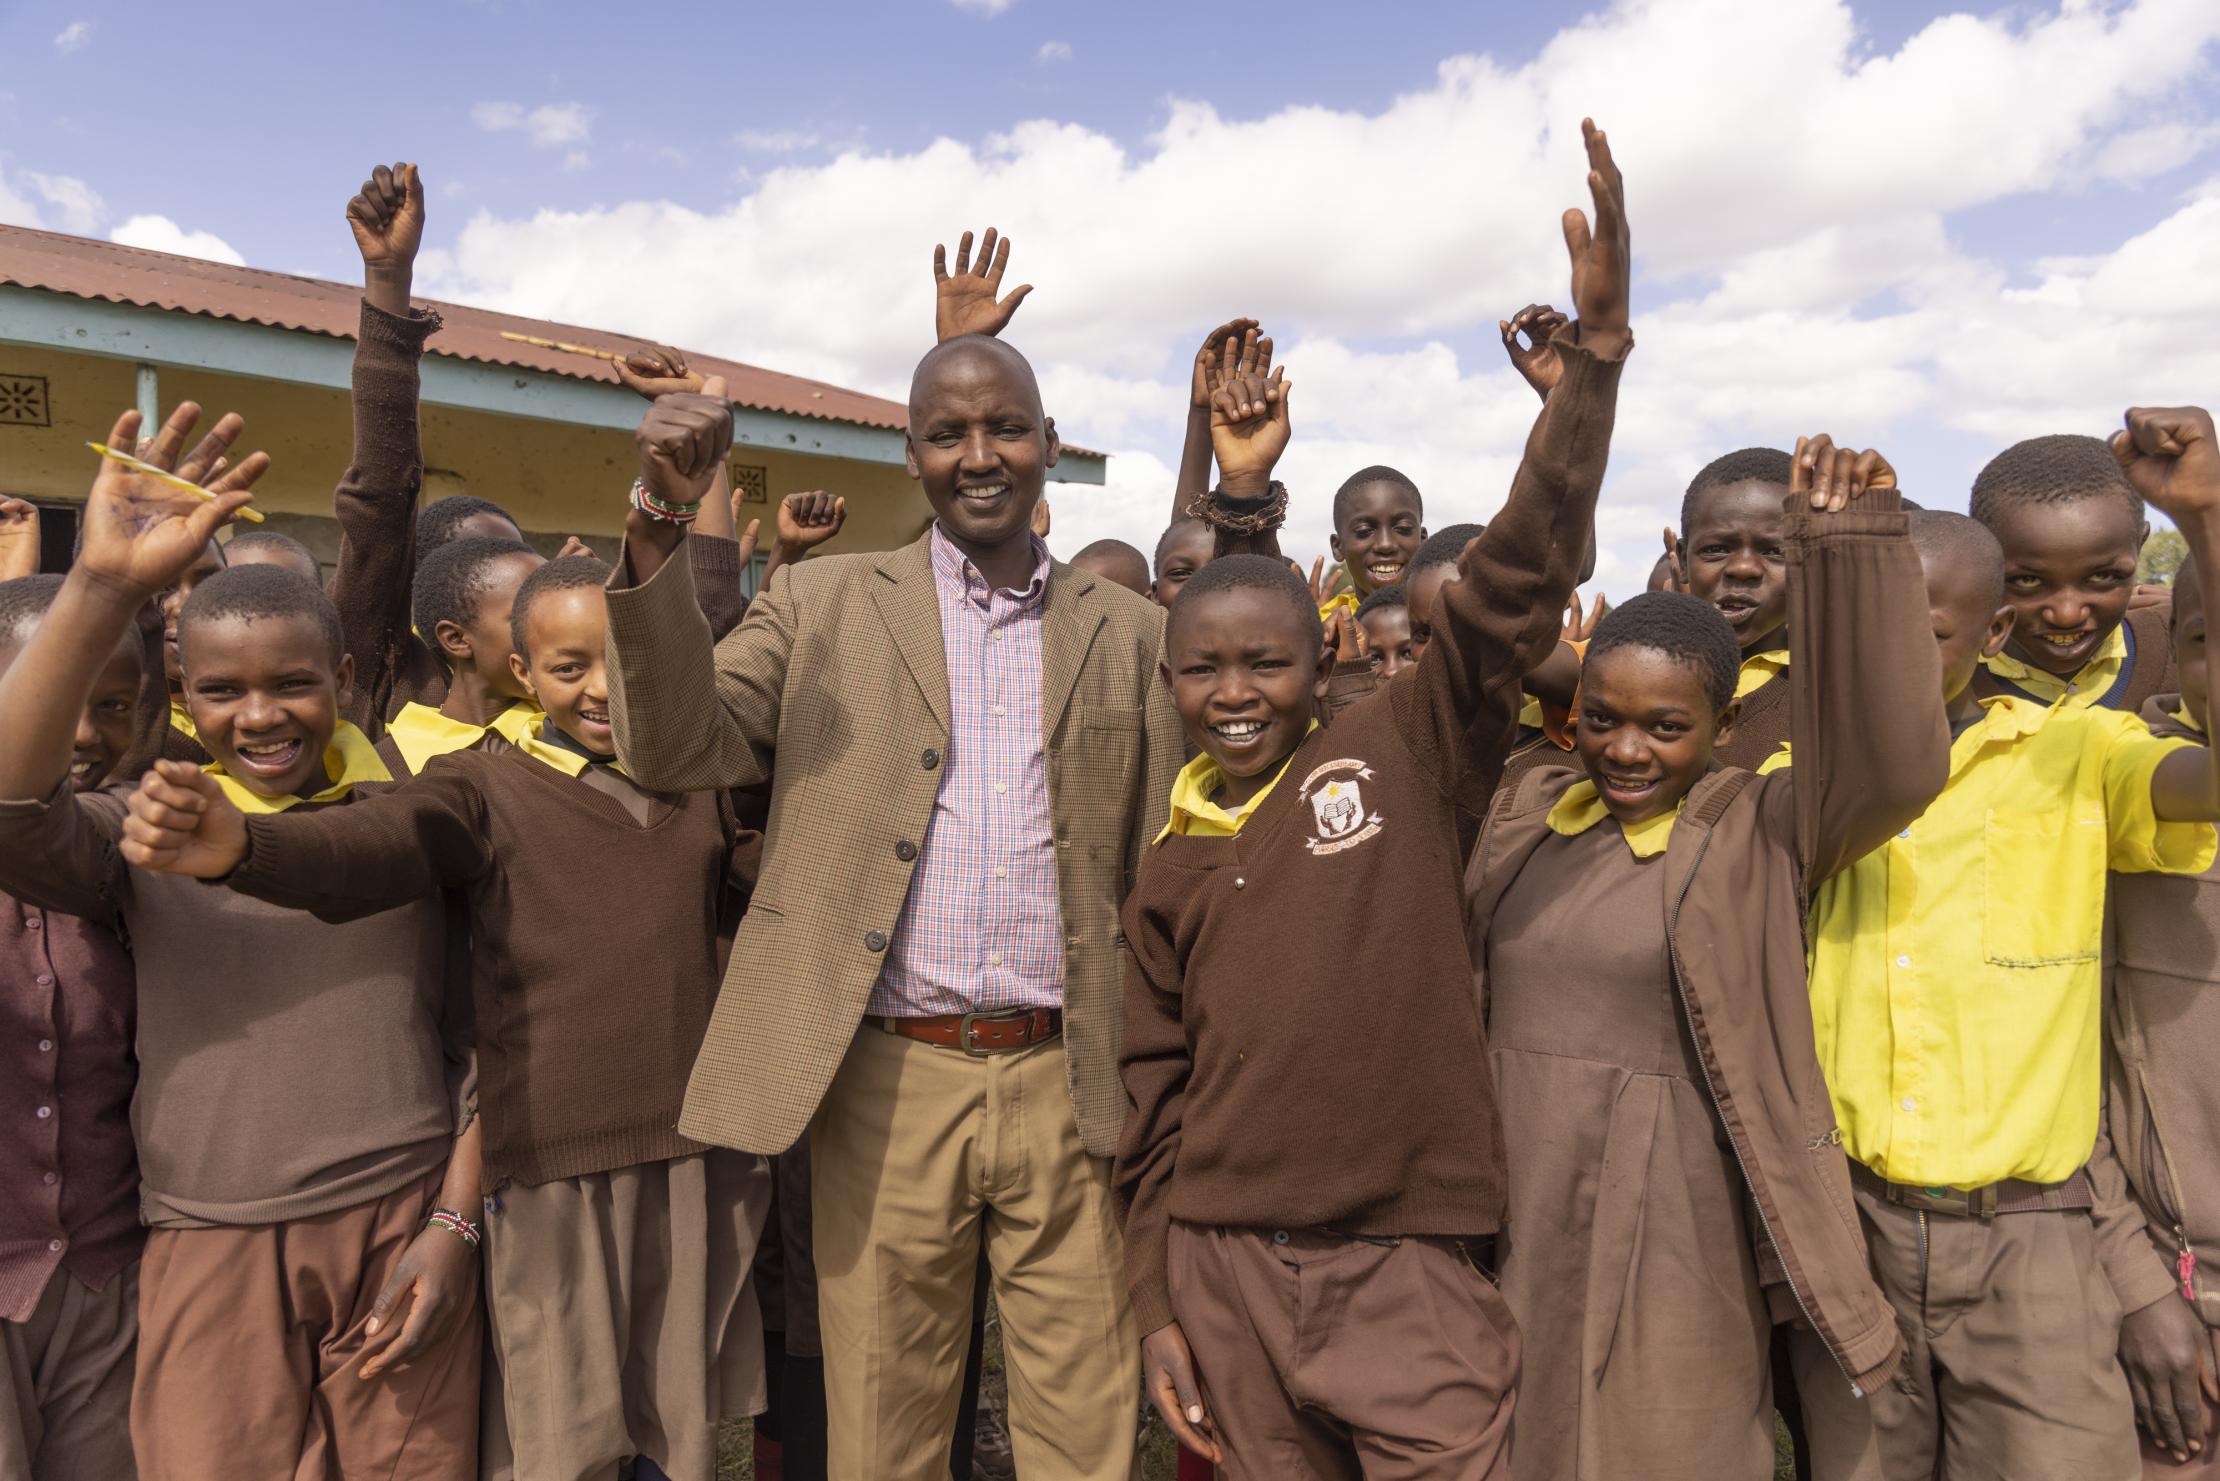 Pupils standing near their teacher in Kenya